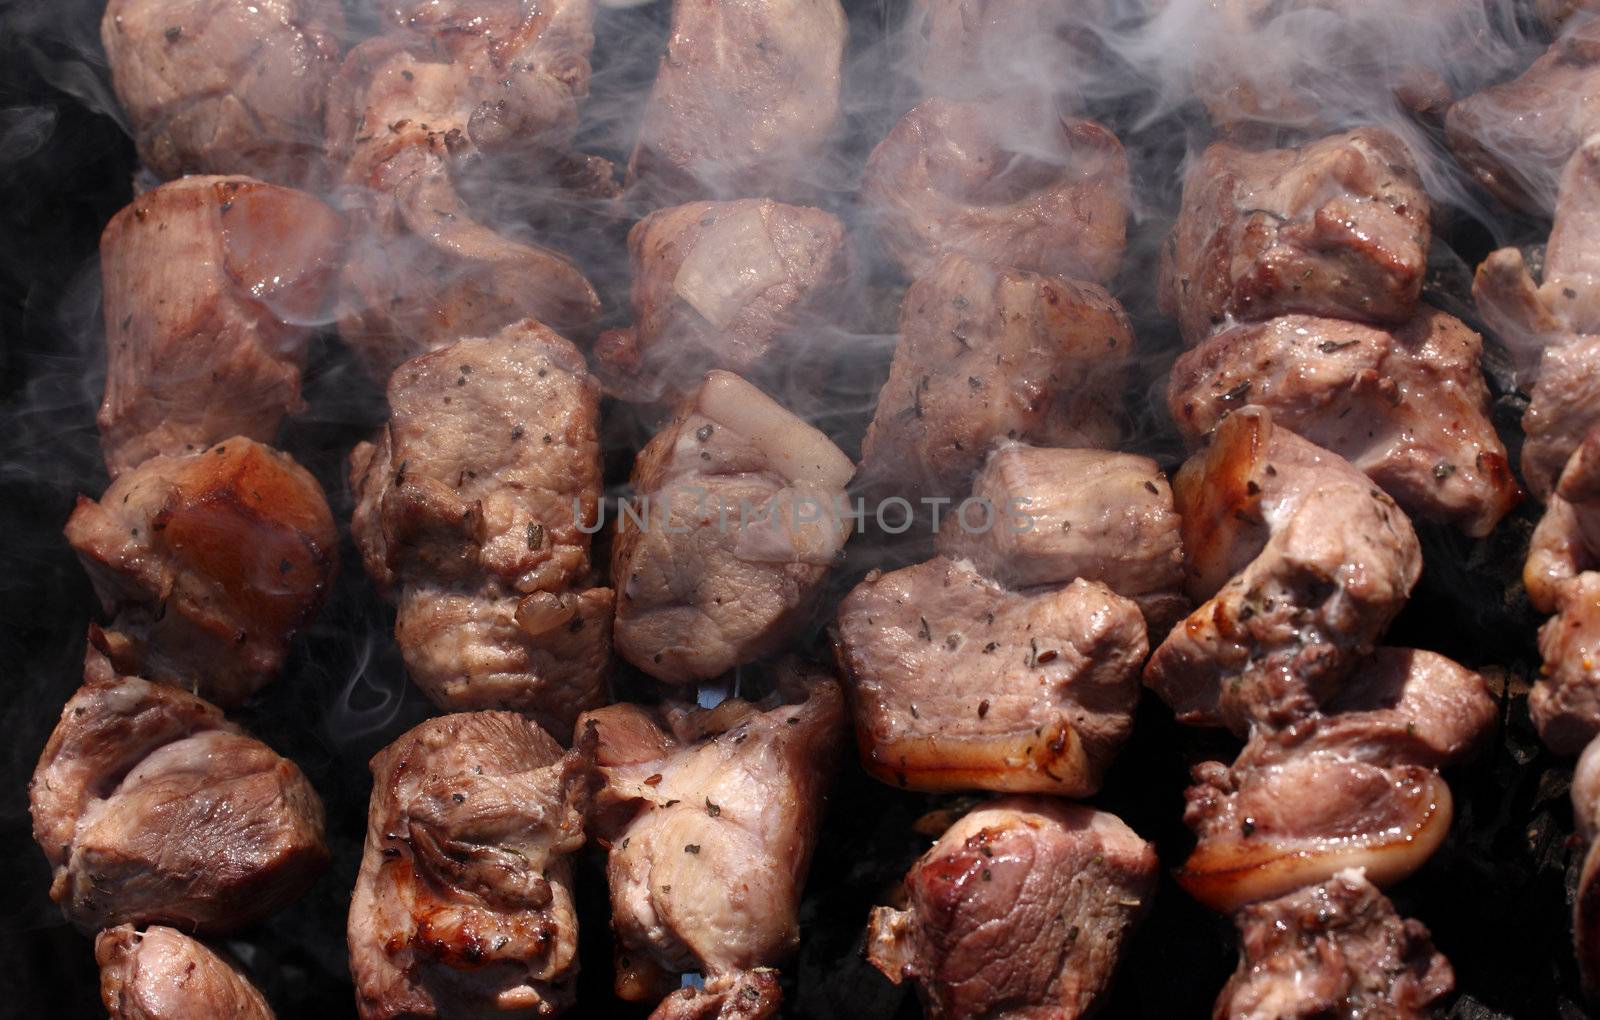 Shish kebab preparation by fedlog